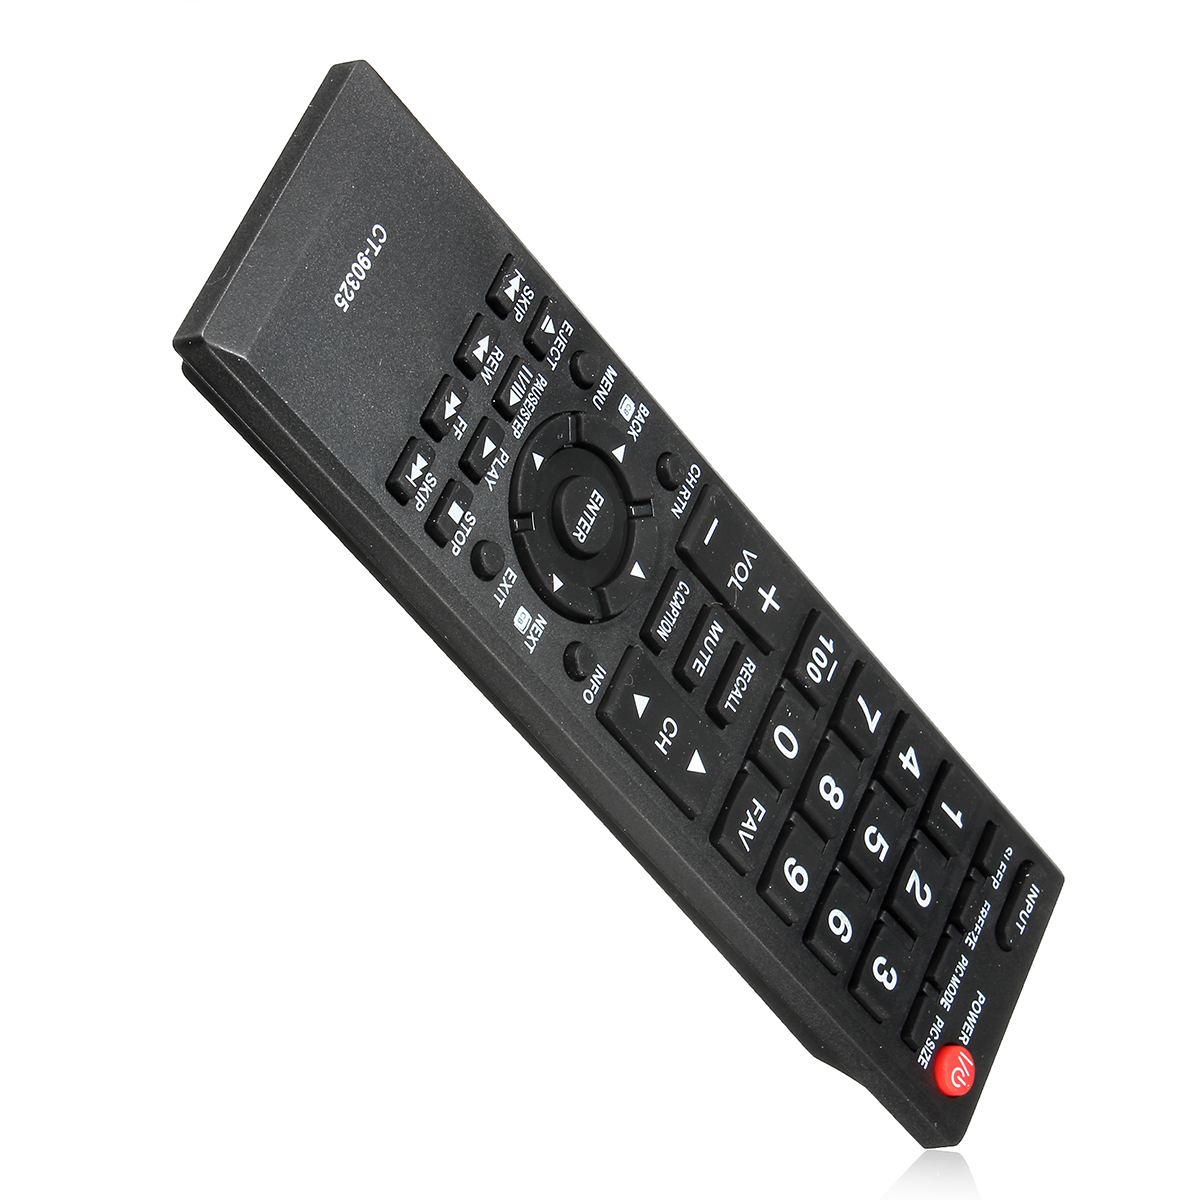 Toshiba CT90325 remote control